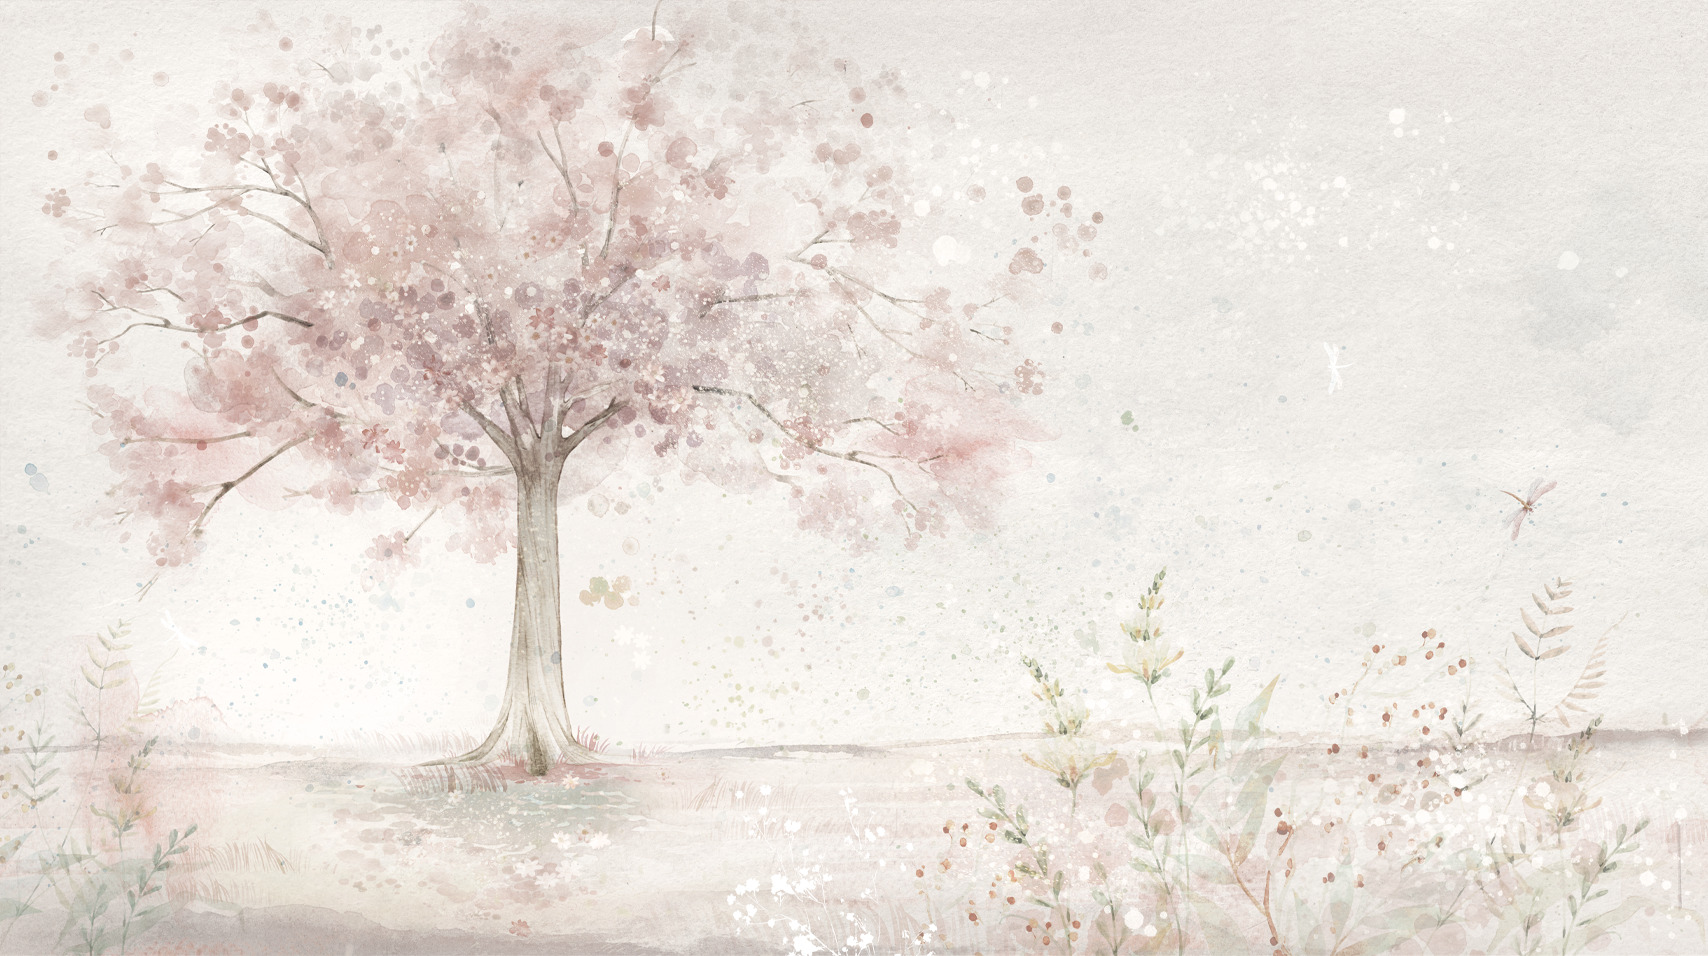 Tapeta w pastelowym, pudrowym kolorze z kwiatami i drzewem